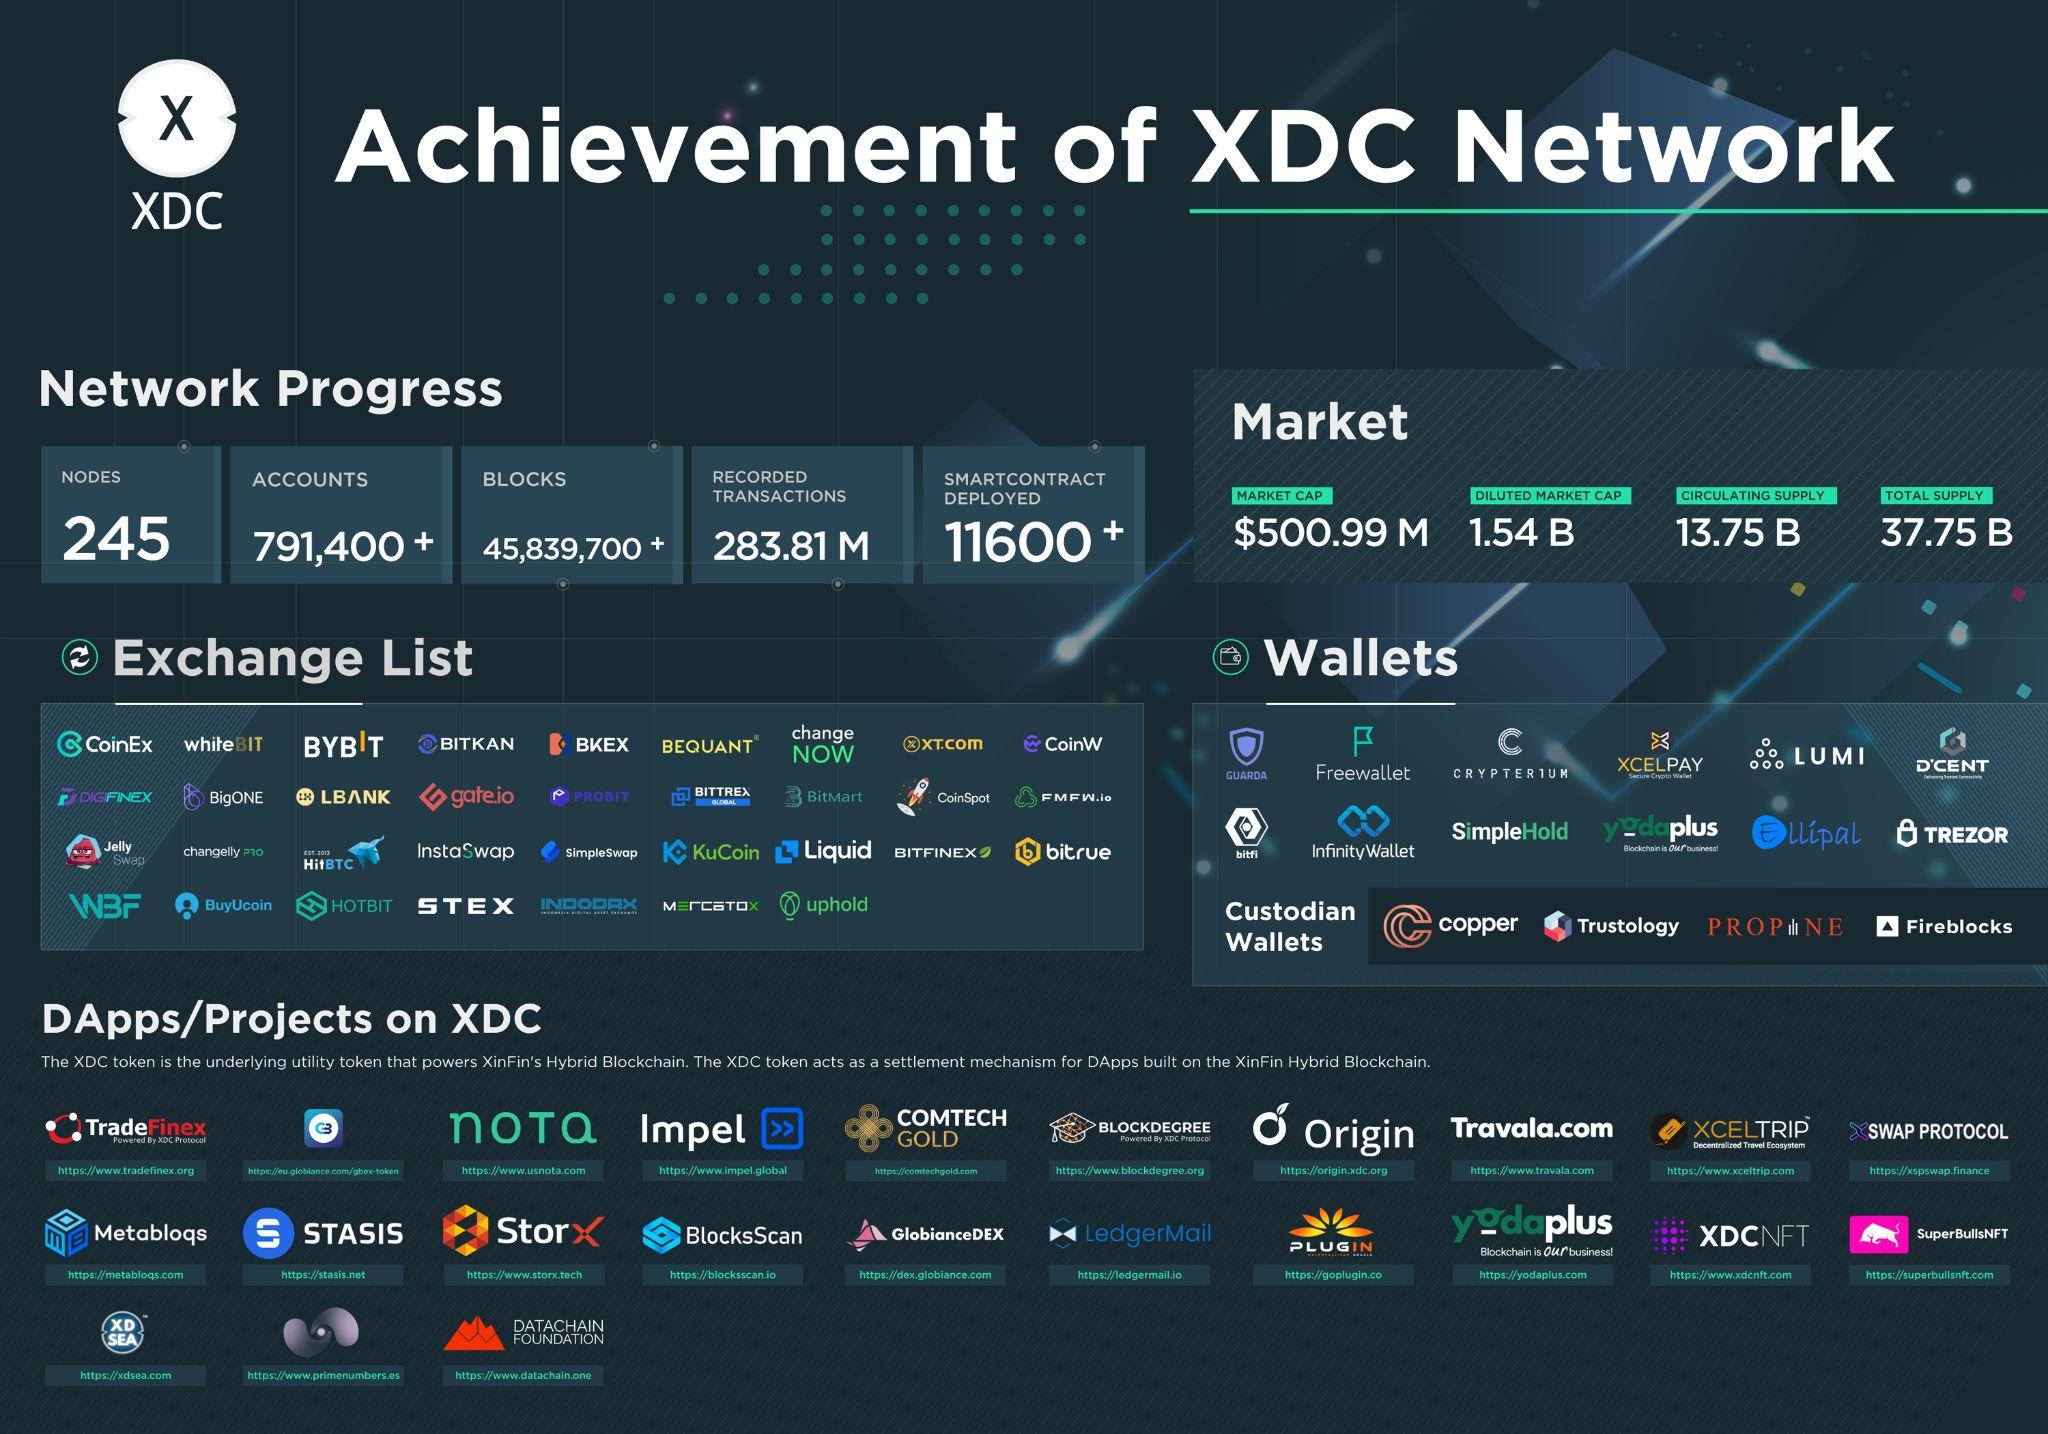 Rrjeti XDC përfundon 3 vite të suksesshme duke dominuar sektorin e Blockchain